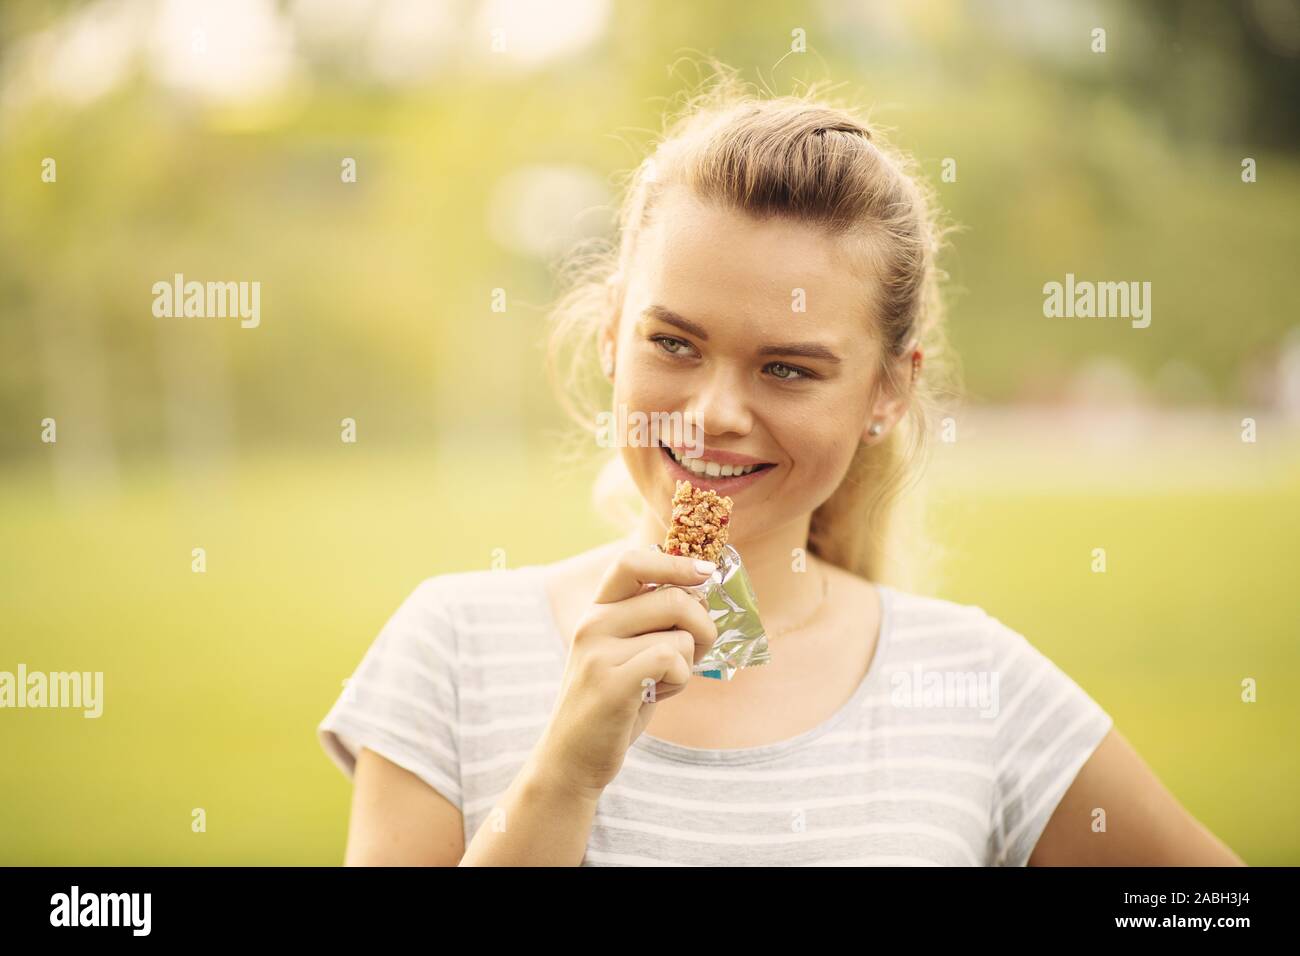 Femme mangeant une barre de protéines après l'entraînement en plein air - libre face of young blonde woman sportive tout en mordant un barre nutritive Banque D'Images